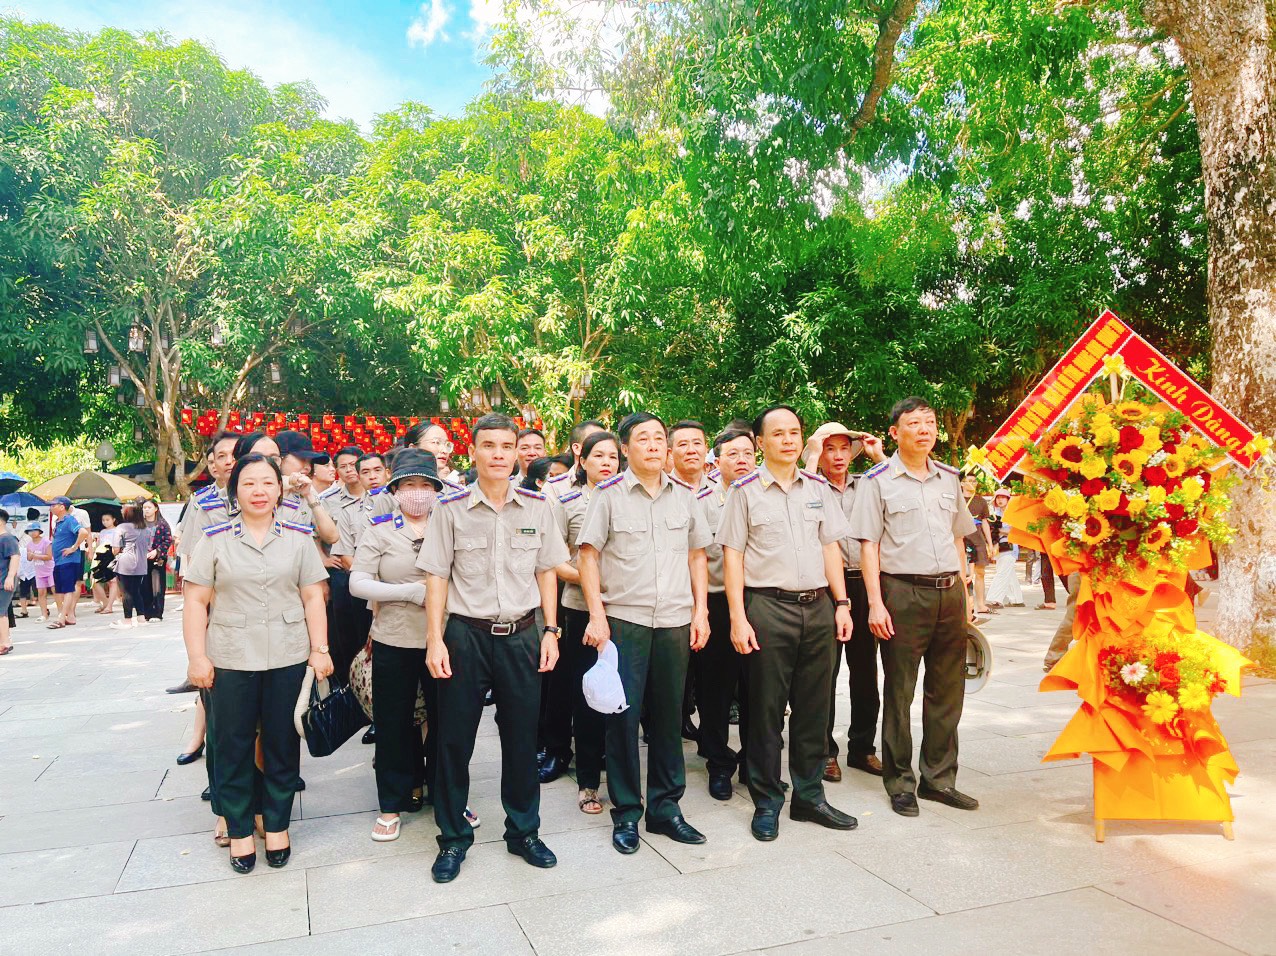 Giao lưu thể thao 4 tỉnh Nghệ An - Hà Tĩnh - Quảng Bình - Quảng Trị chào mừng kỷ niệm 78 năm ngày truyền thống THADS (19/7/1946 - 19/7/2024) 7